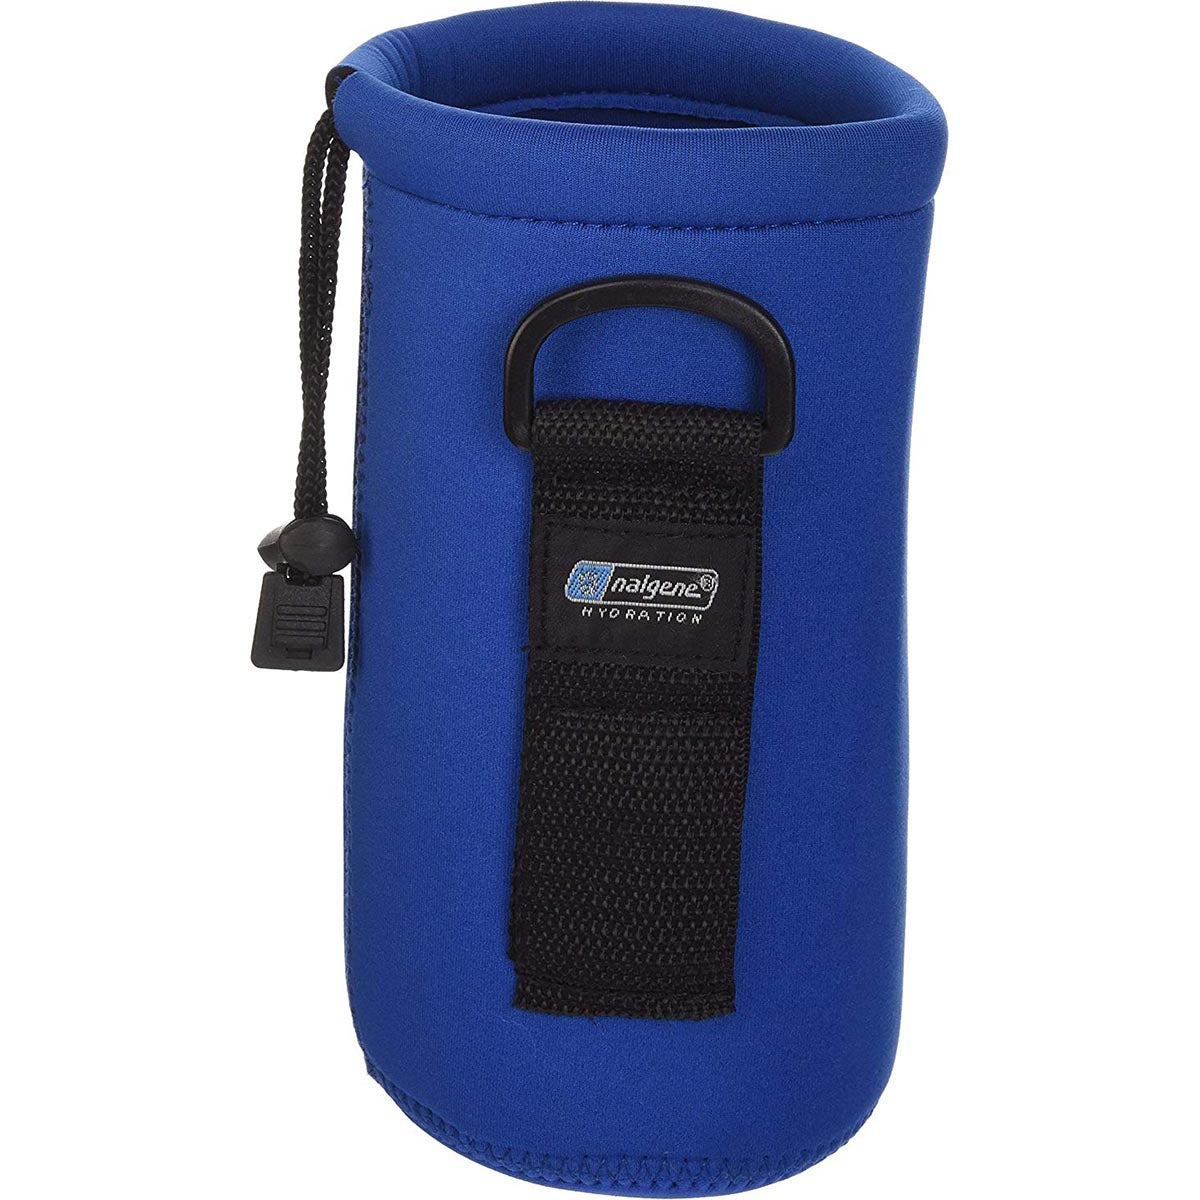 Nalgene Cool Stuff Neoprene 32 oz. Water Bottle Cover Carrier - Blue Nalgene